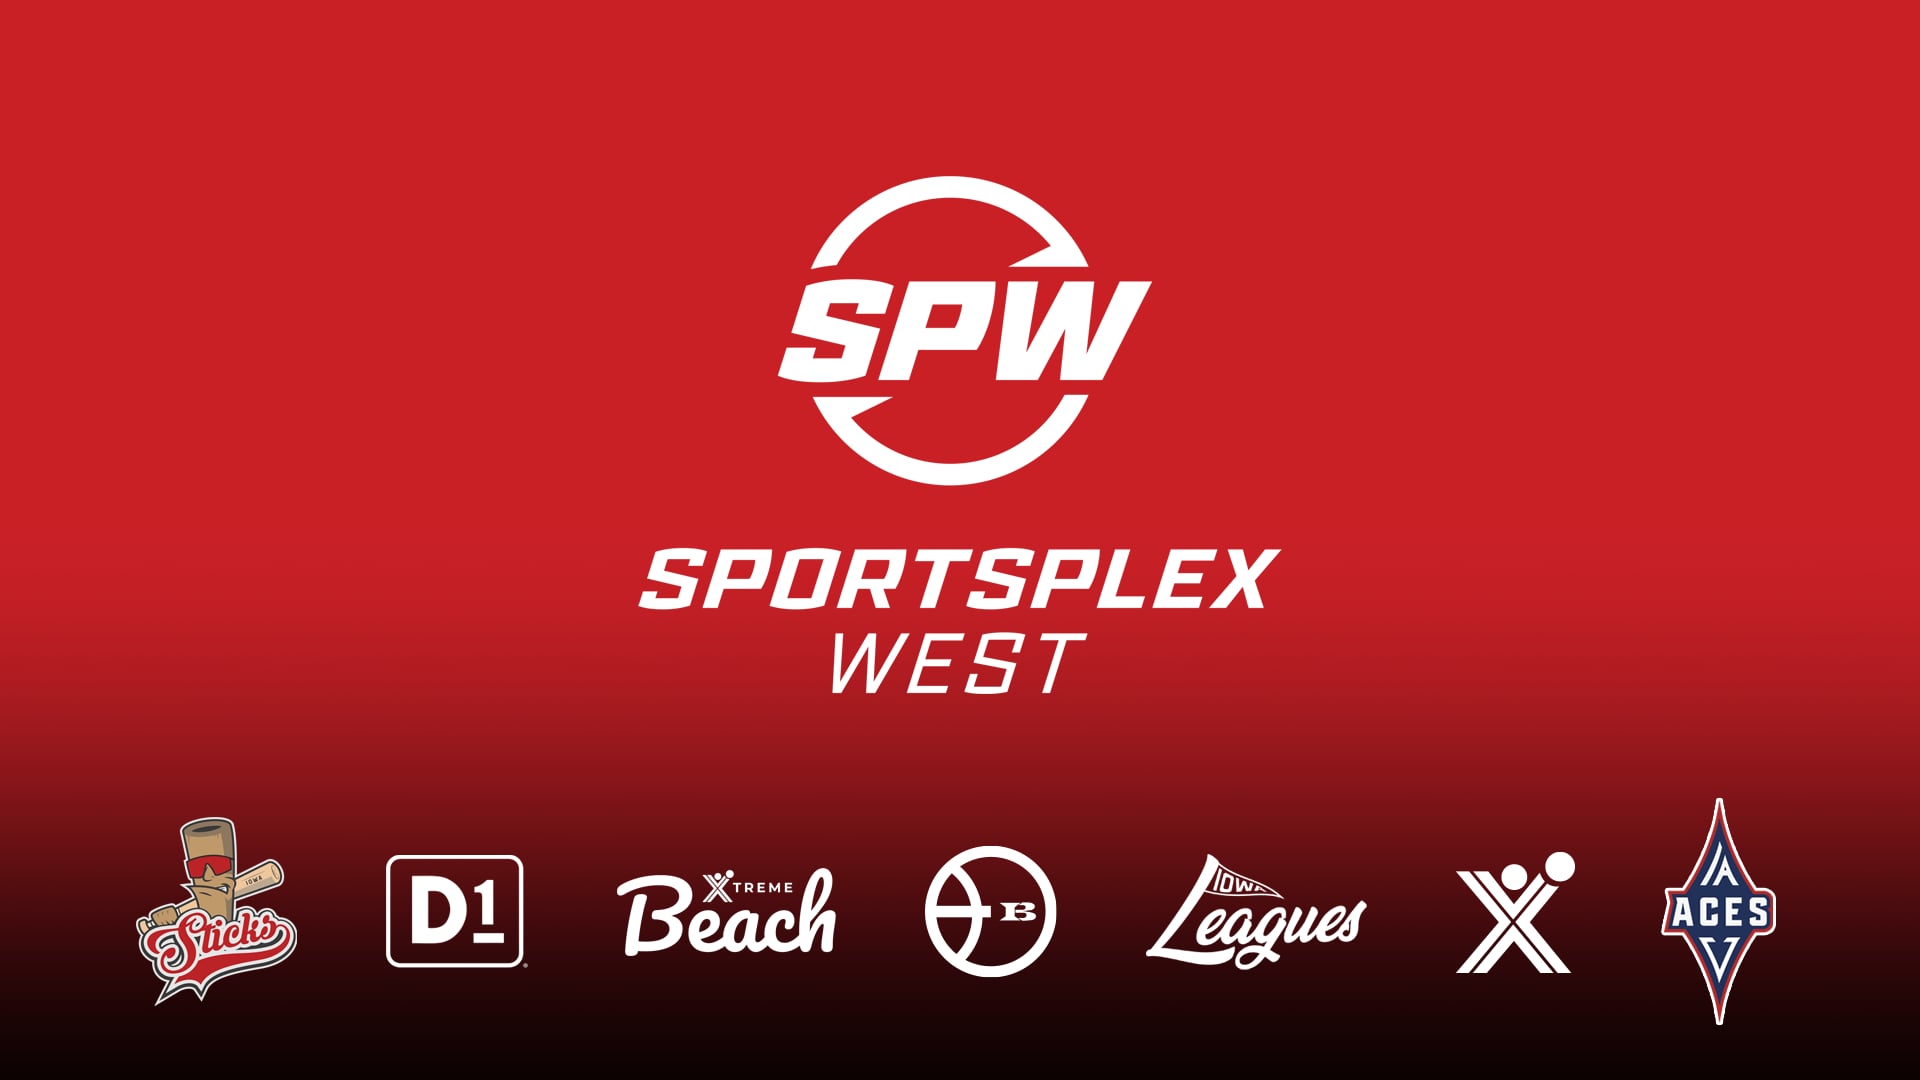 Video Business Card | Sportsplex West